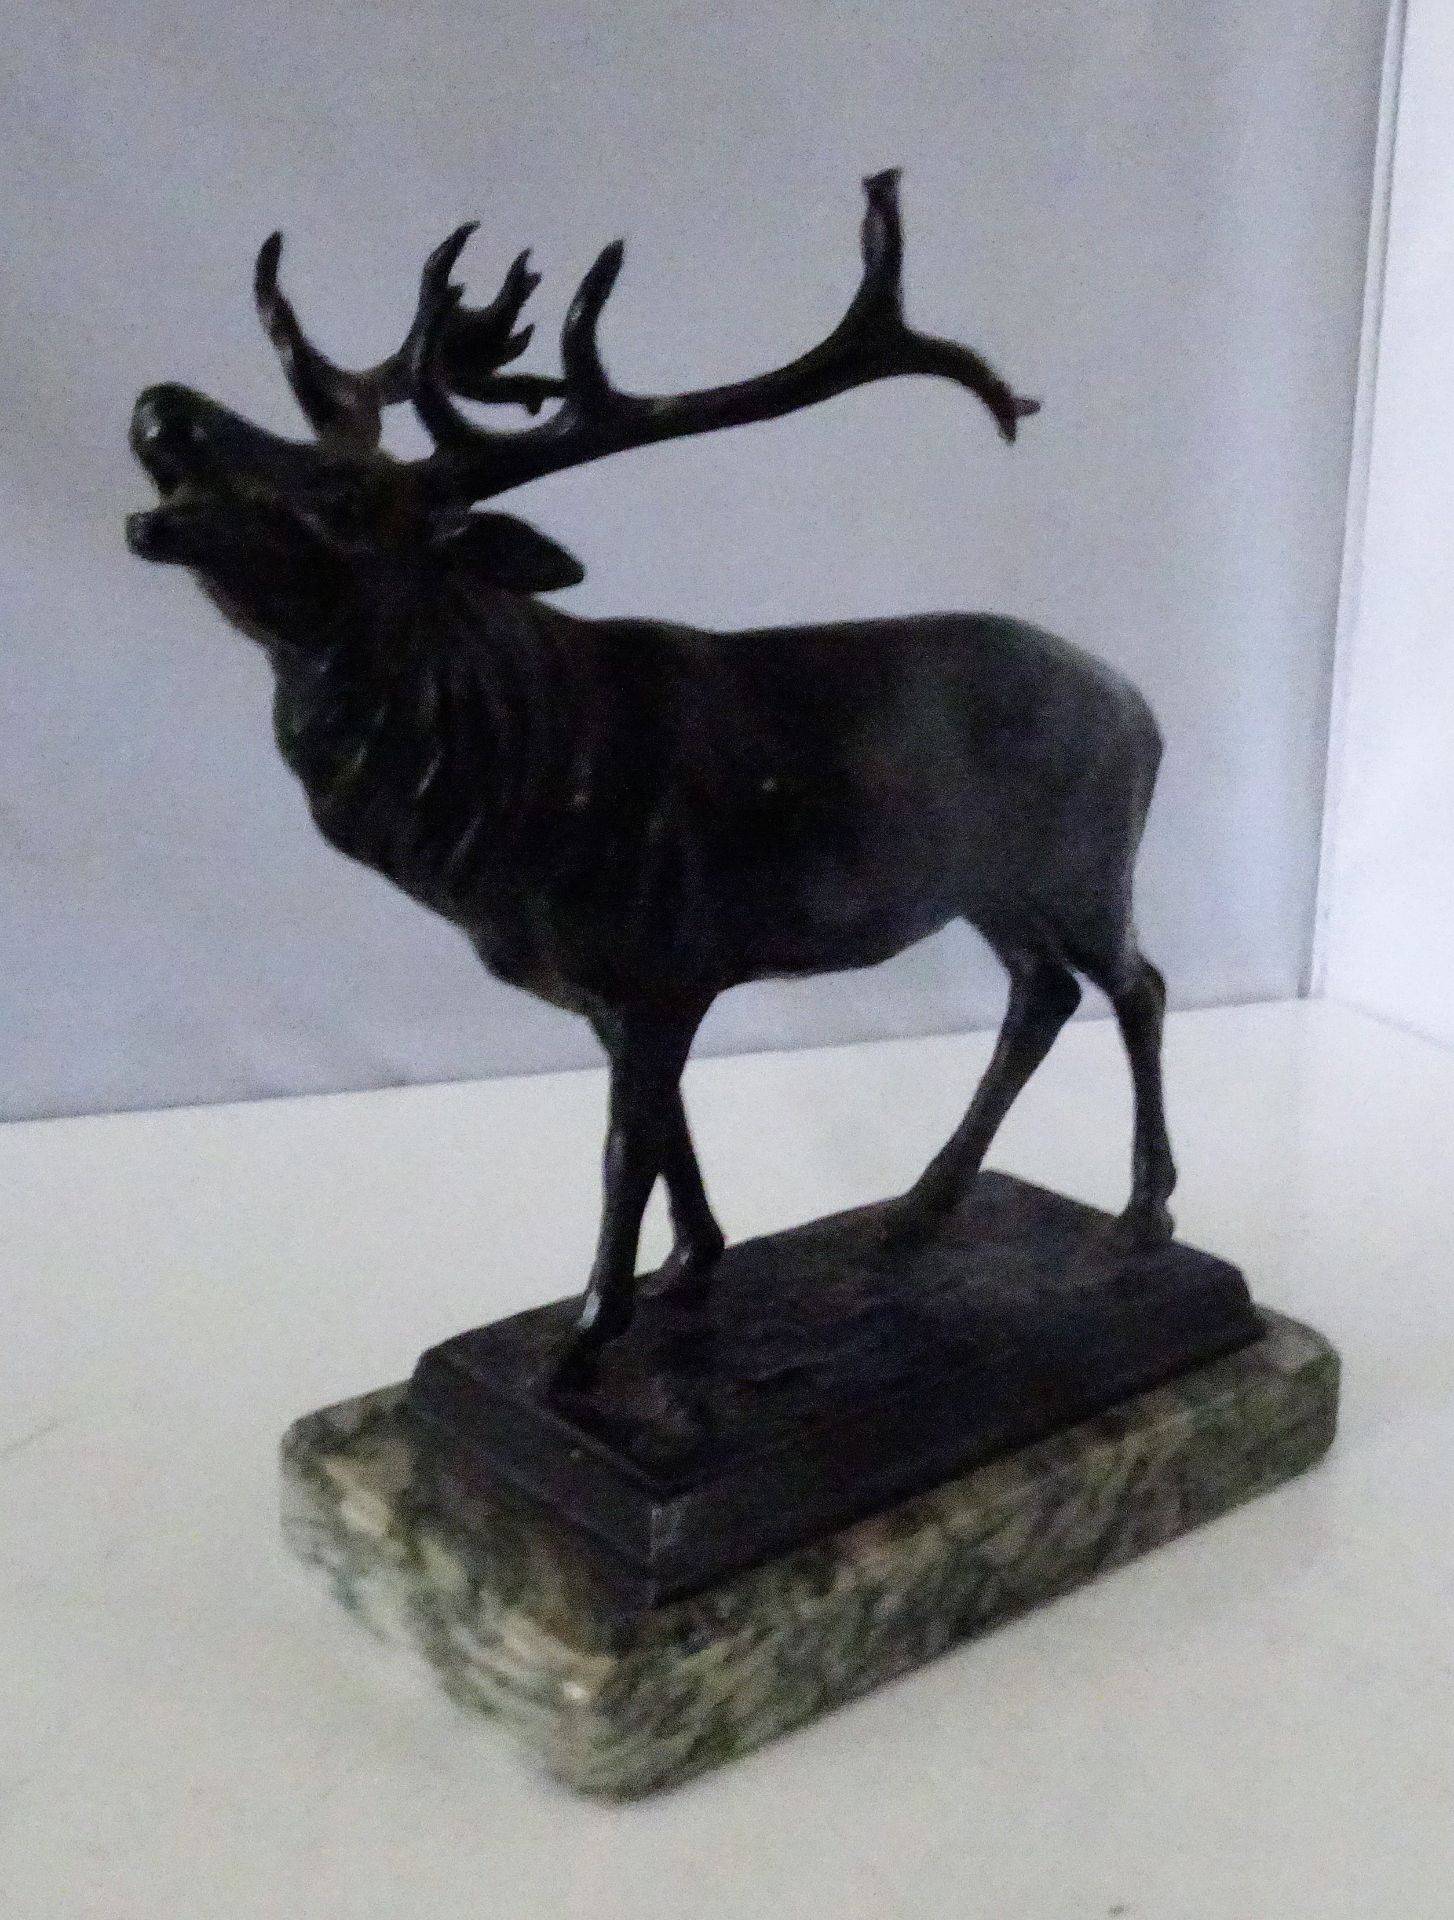 Bronzefigur geschwärzt "Röhrender Hirsch", auf Marmorsockel. Maße: Höhe ca. 20 cm, Breite ca. 15 cm,